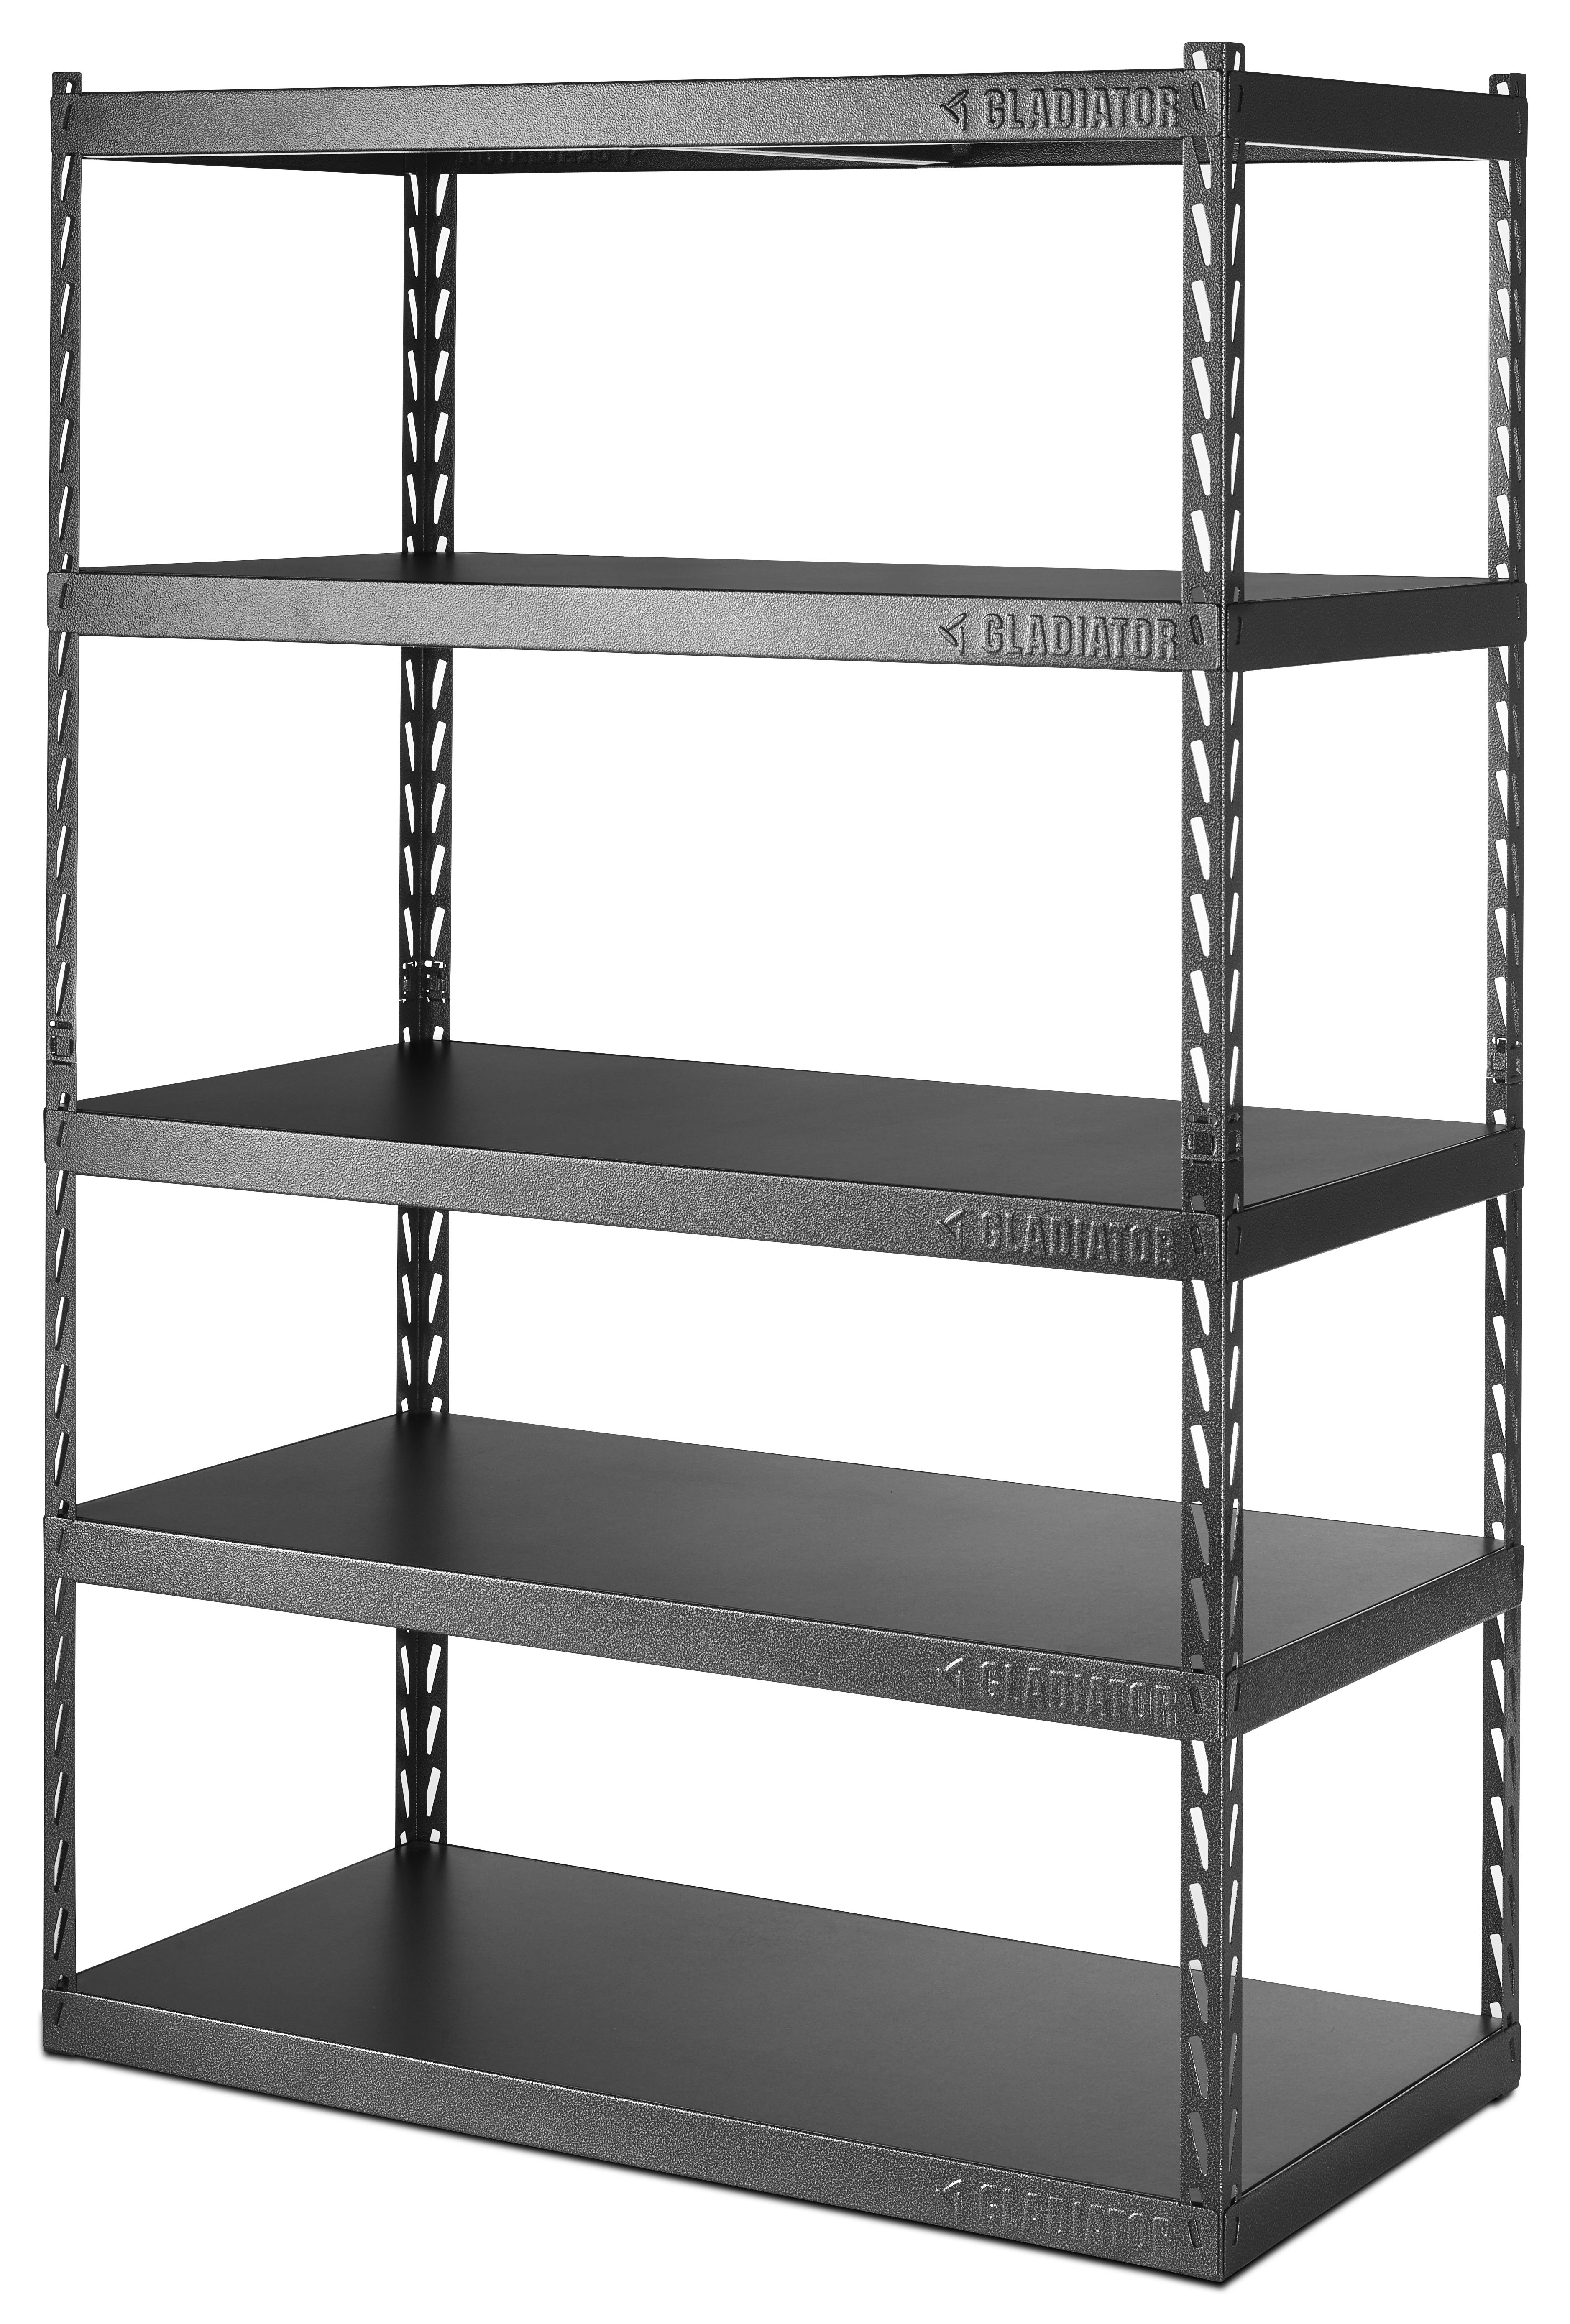 Gladiator 5 Shelf Steel Garage Shelving Unit Shelves Storage EZ Connect 72x48 in for sale online 